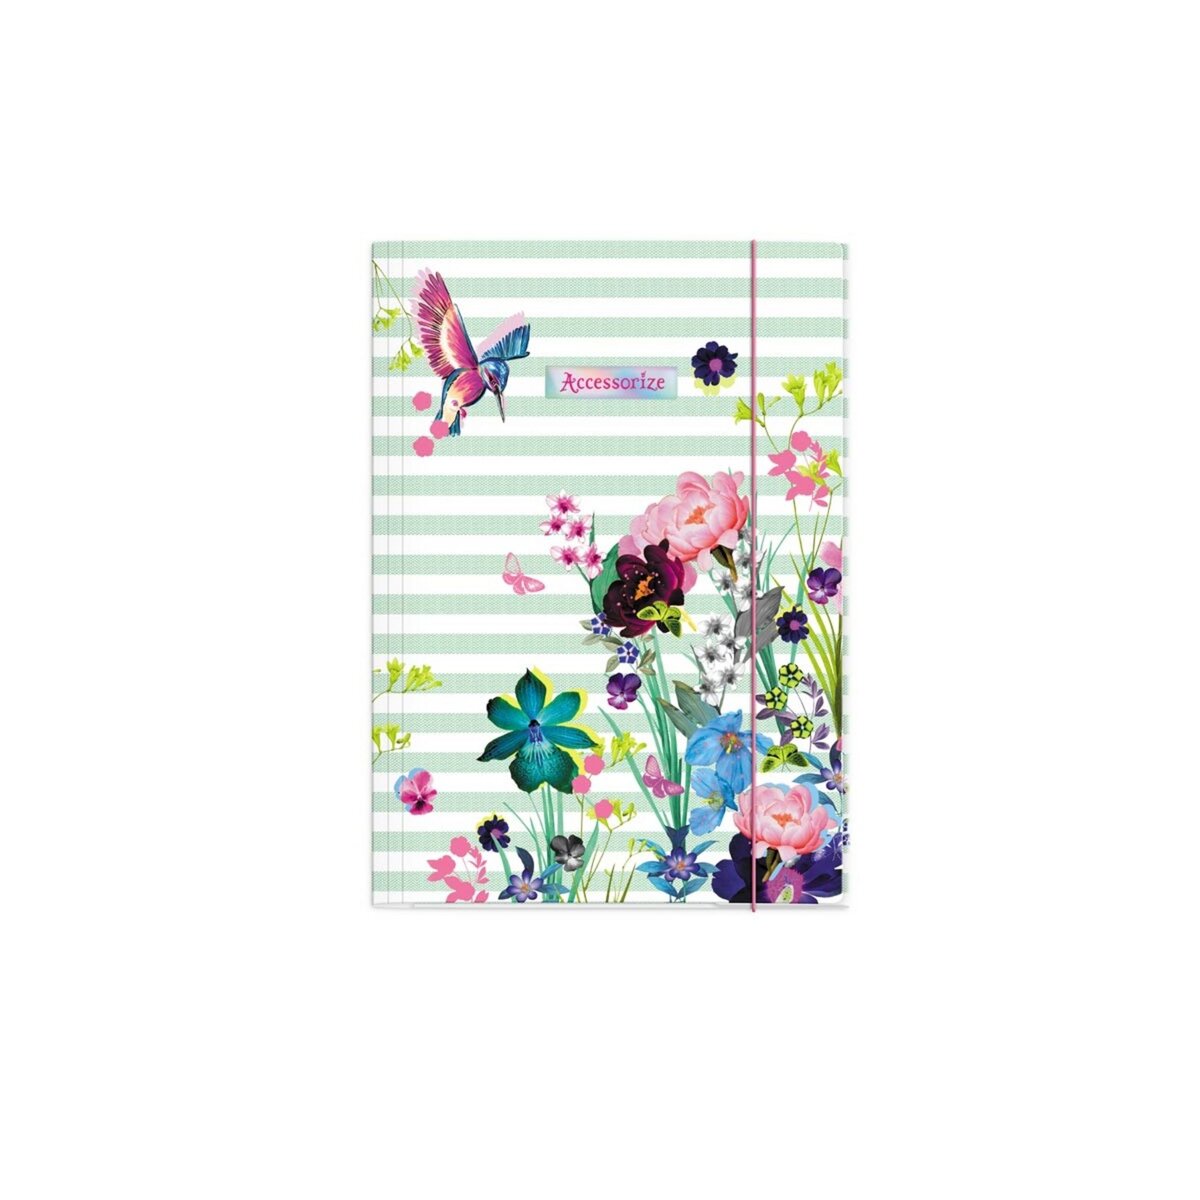  Chemise cartonnée à élastique Accessorize 35x25cm blanc et vert à rayures et motif floral